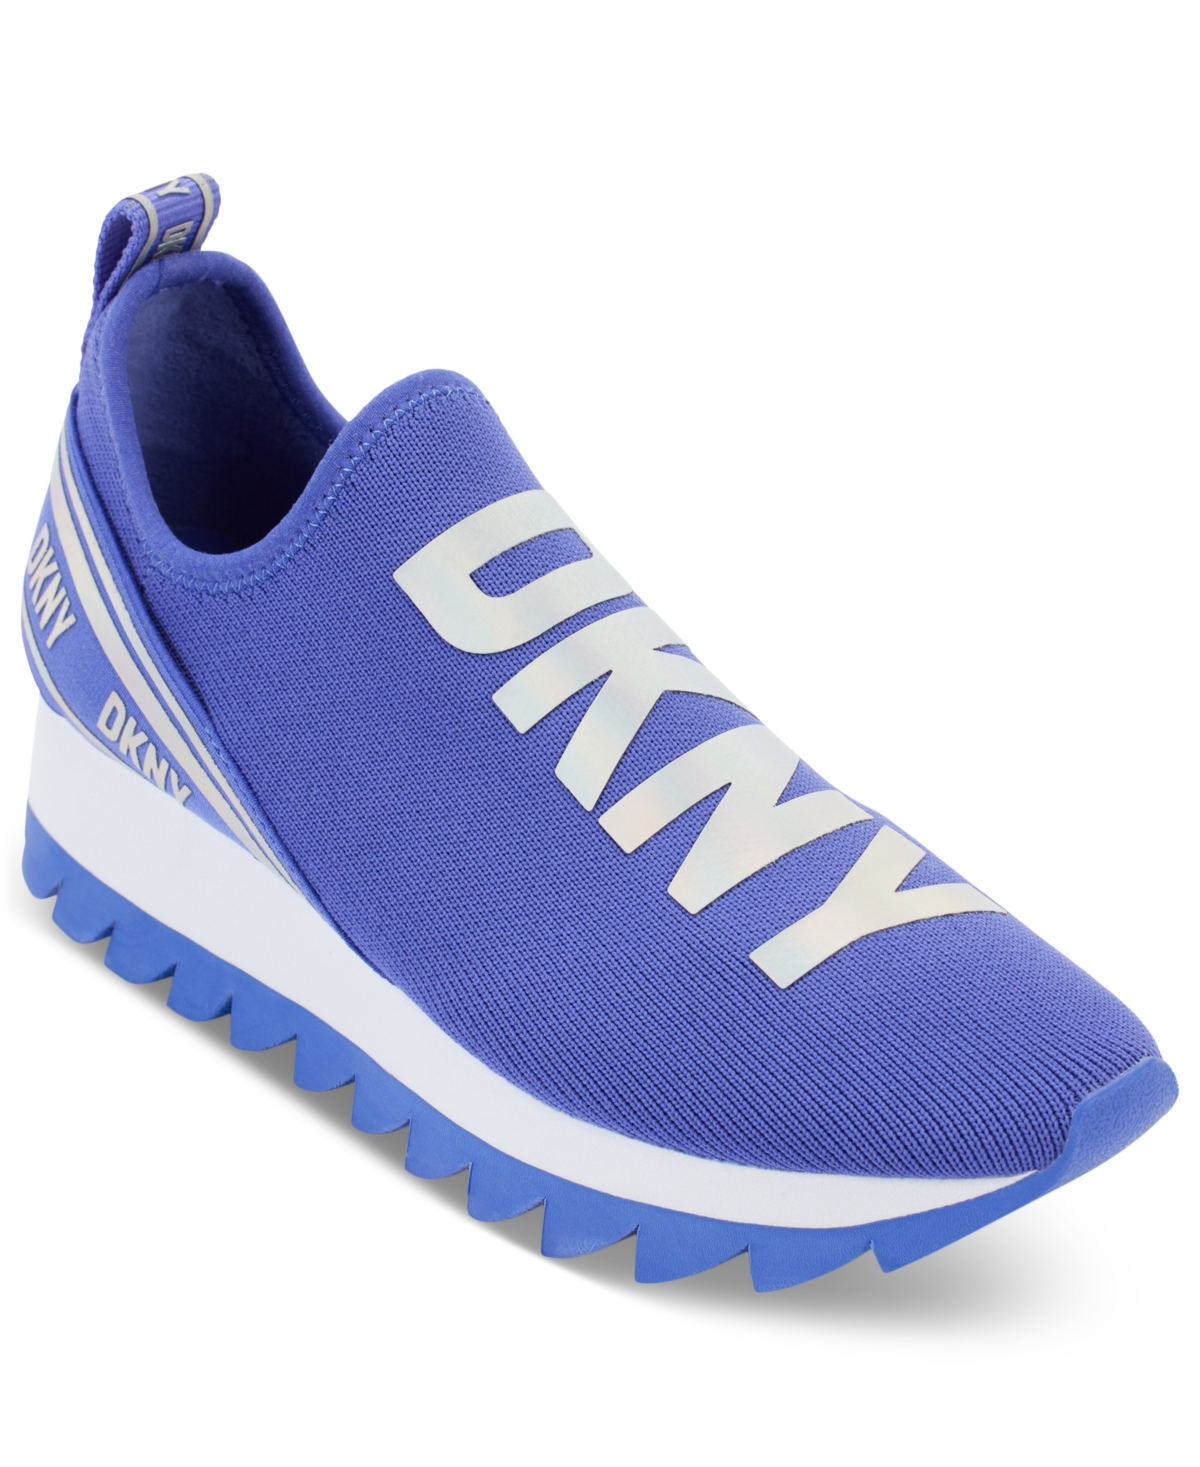 Dkny Abbi Knit Sneaker In Periwinkle Blue